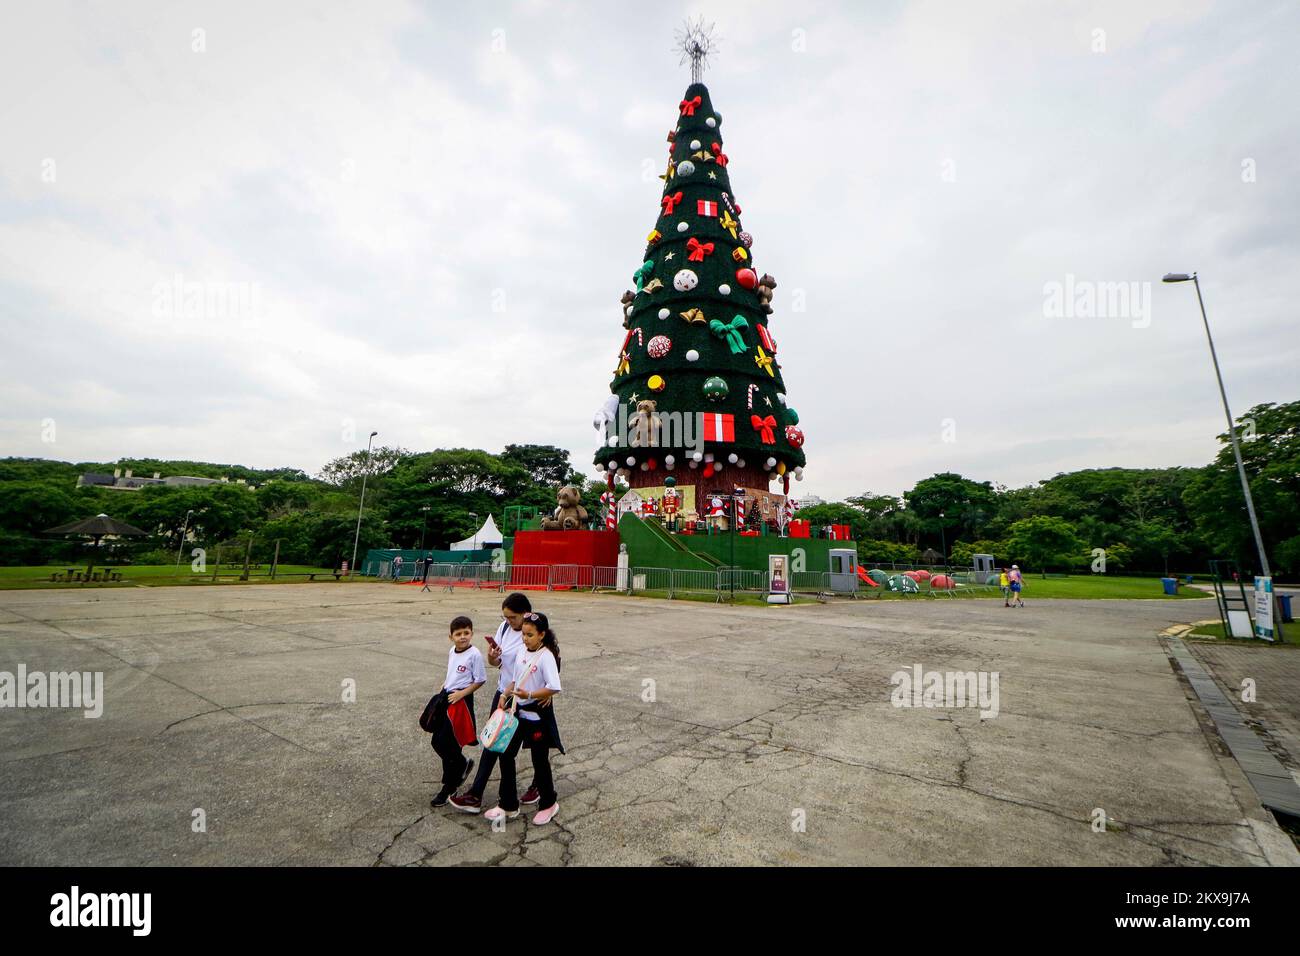 SÃO PAULO, SP : ÁRVORE DE NATAL NO VILLA LOBOS - le célèbre  arbre de Noël, 52 mètres de haut et avec un espace interactif, quitte le  parc Ibirapuera cette année